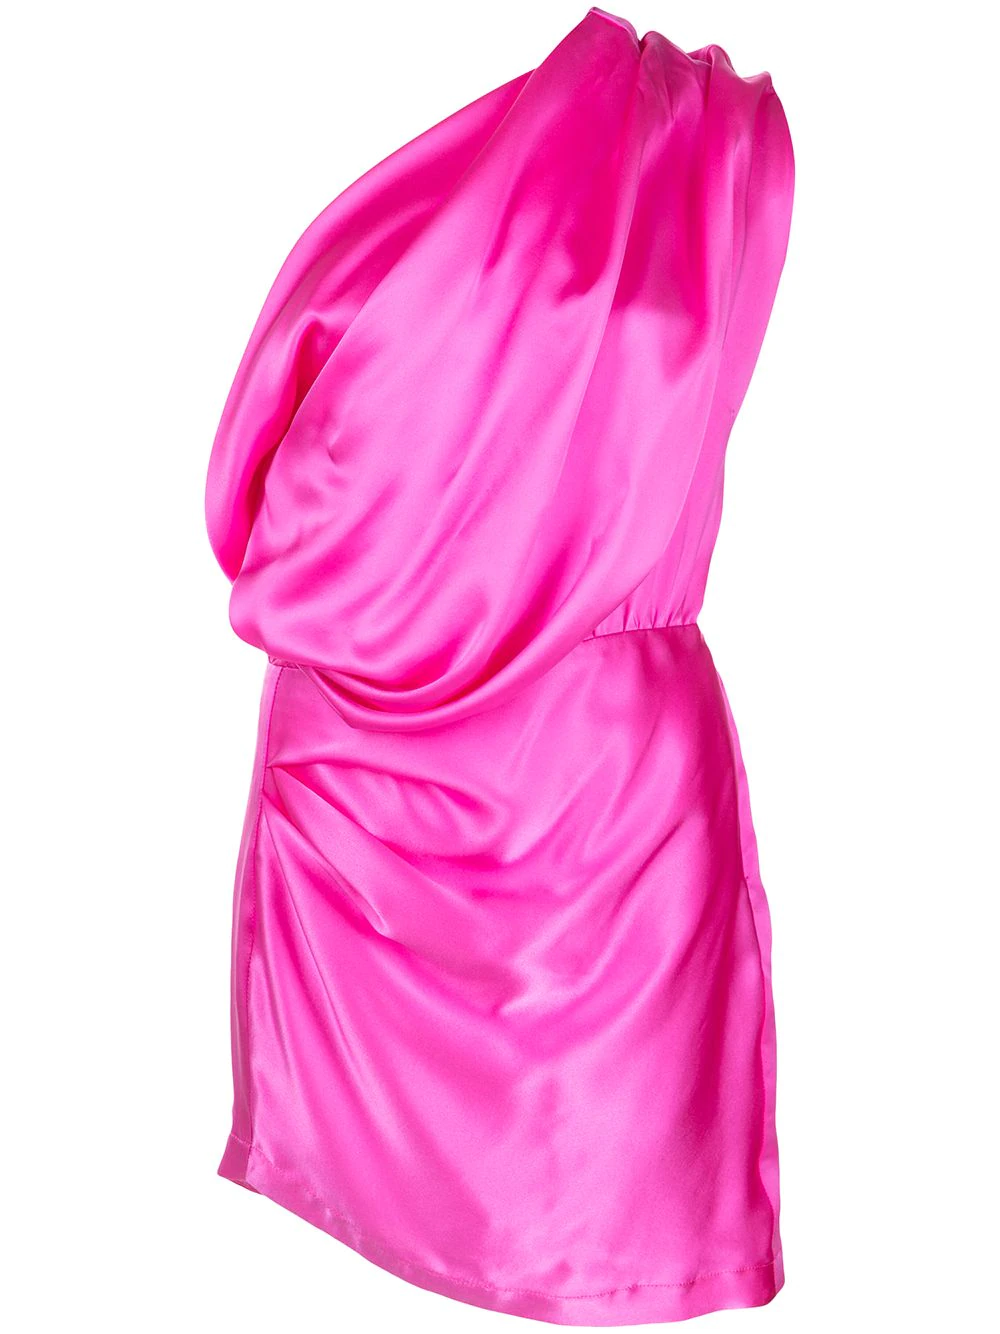 Где купить розовые платья Барби, от которых сходят с ума Хейли Бибер, Меган Фокс и Хлои Кардашьян?